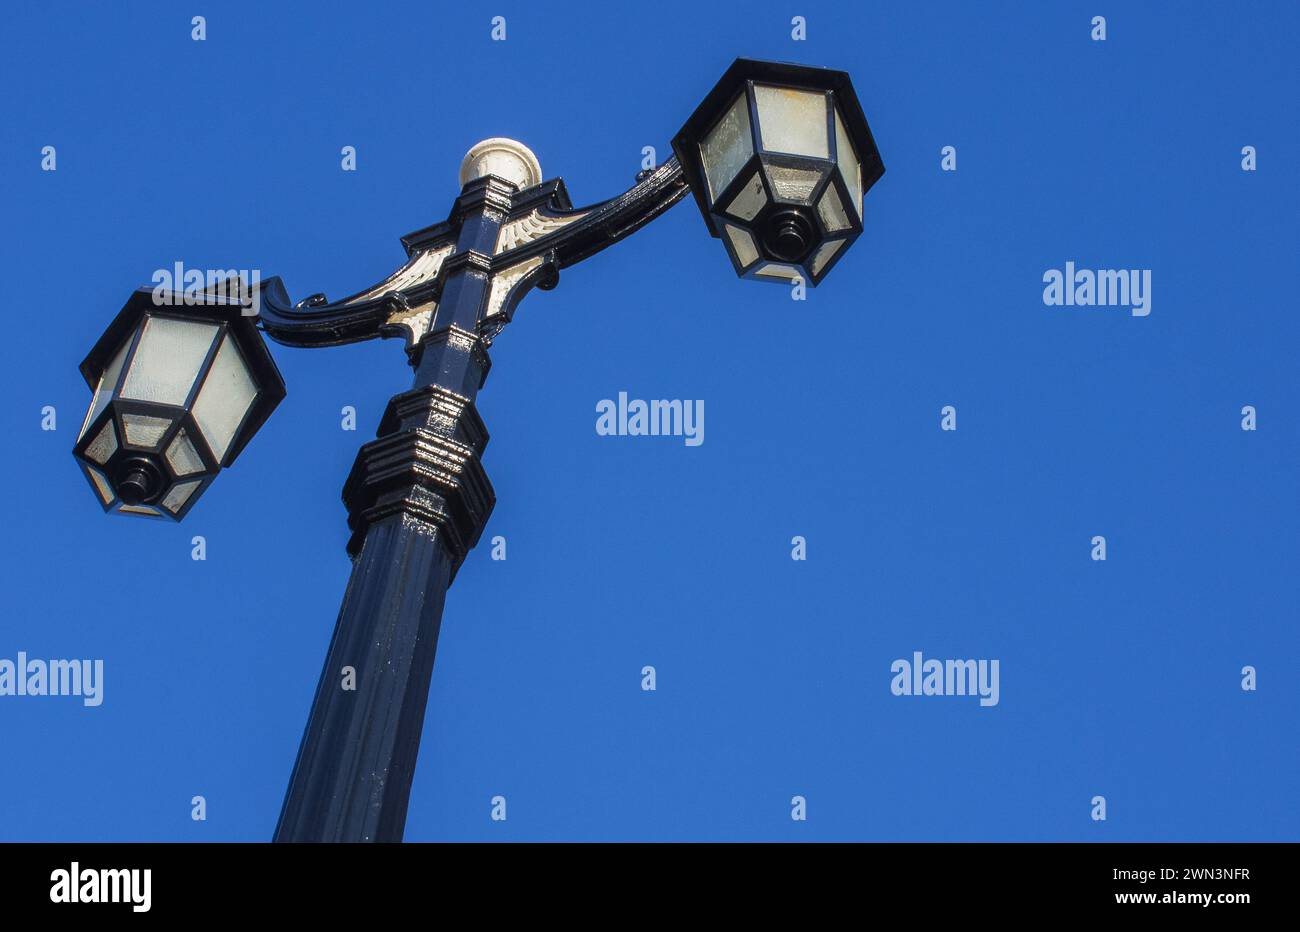 ECLAIRAGE de rue à l'ancienne avec doubles lampes contre le ciel bleu Banque D'Images